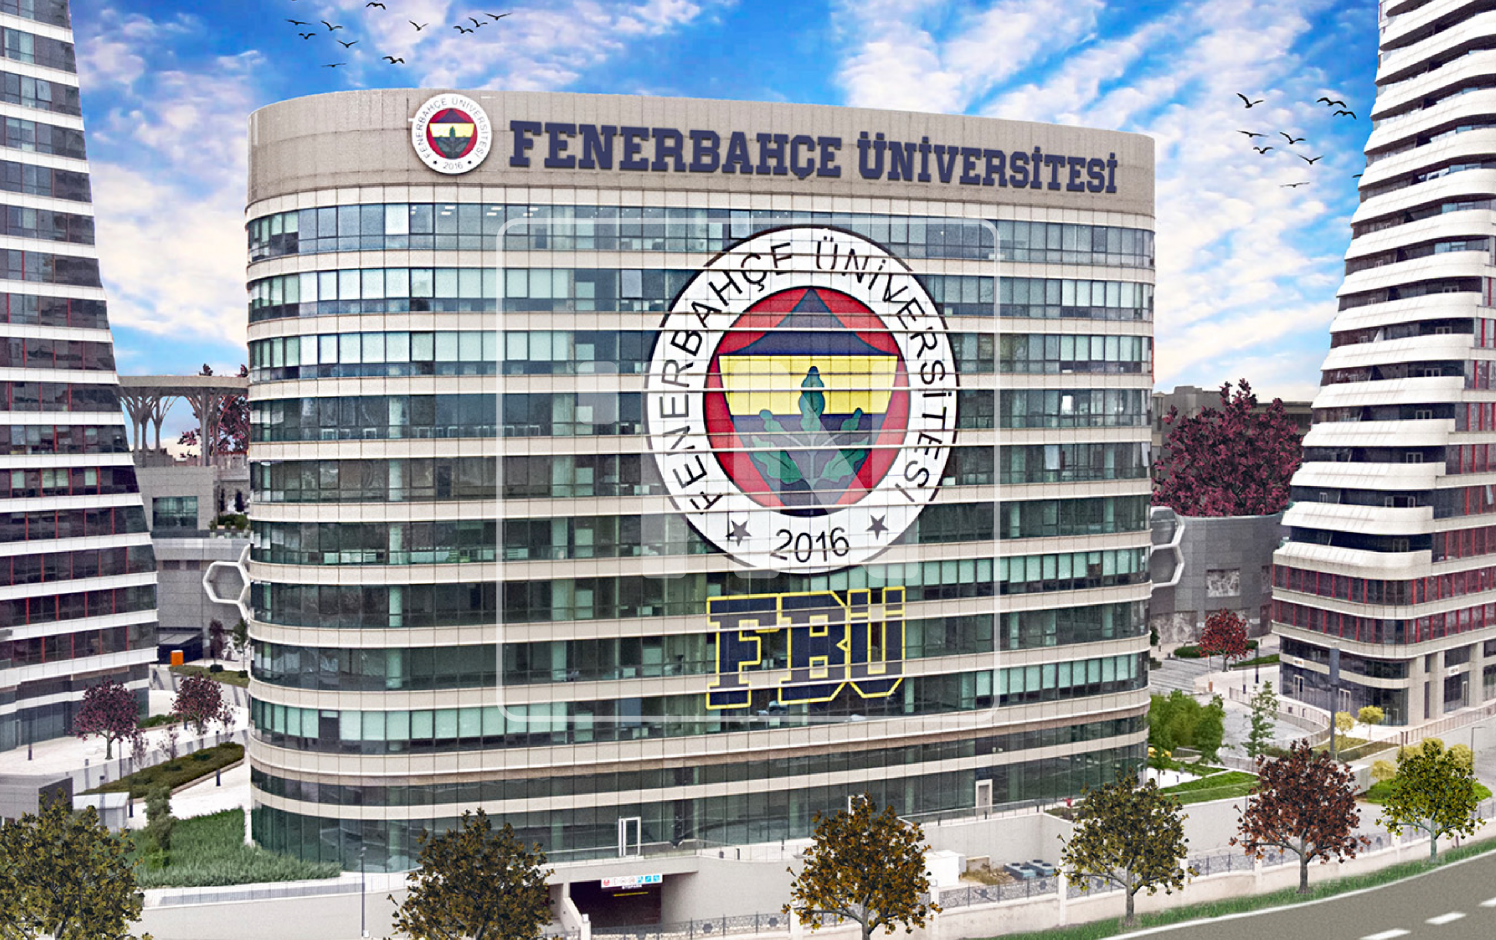 Fenerbahçe University Ataşehir